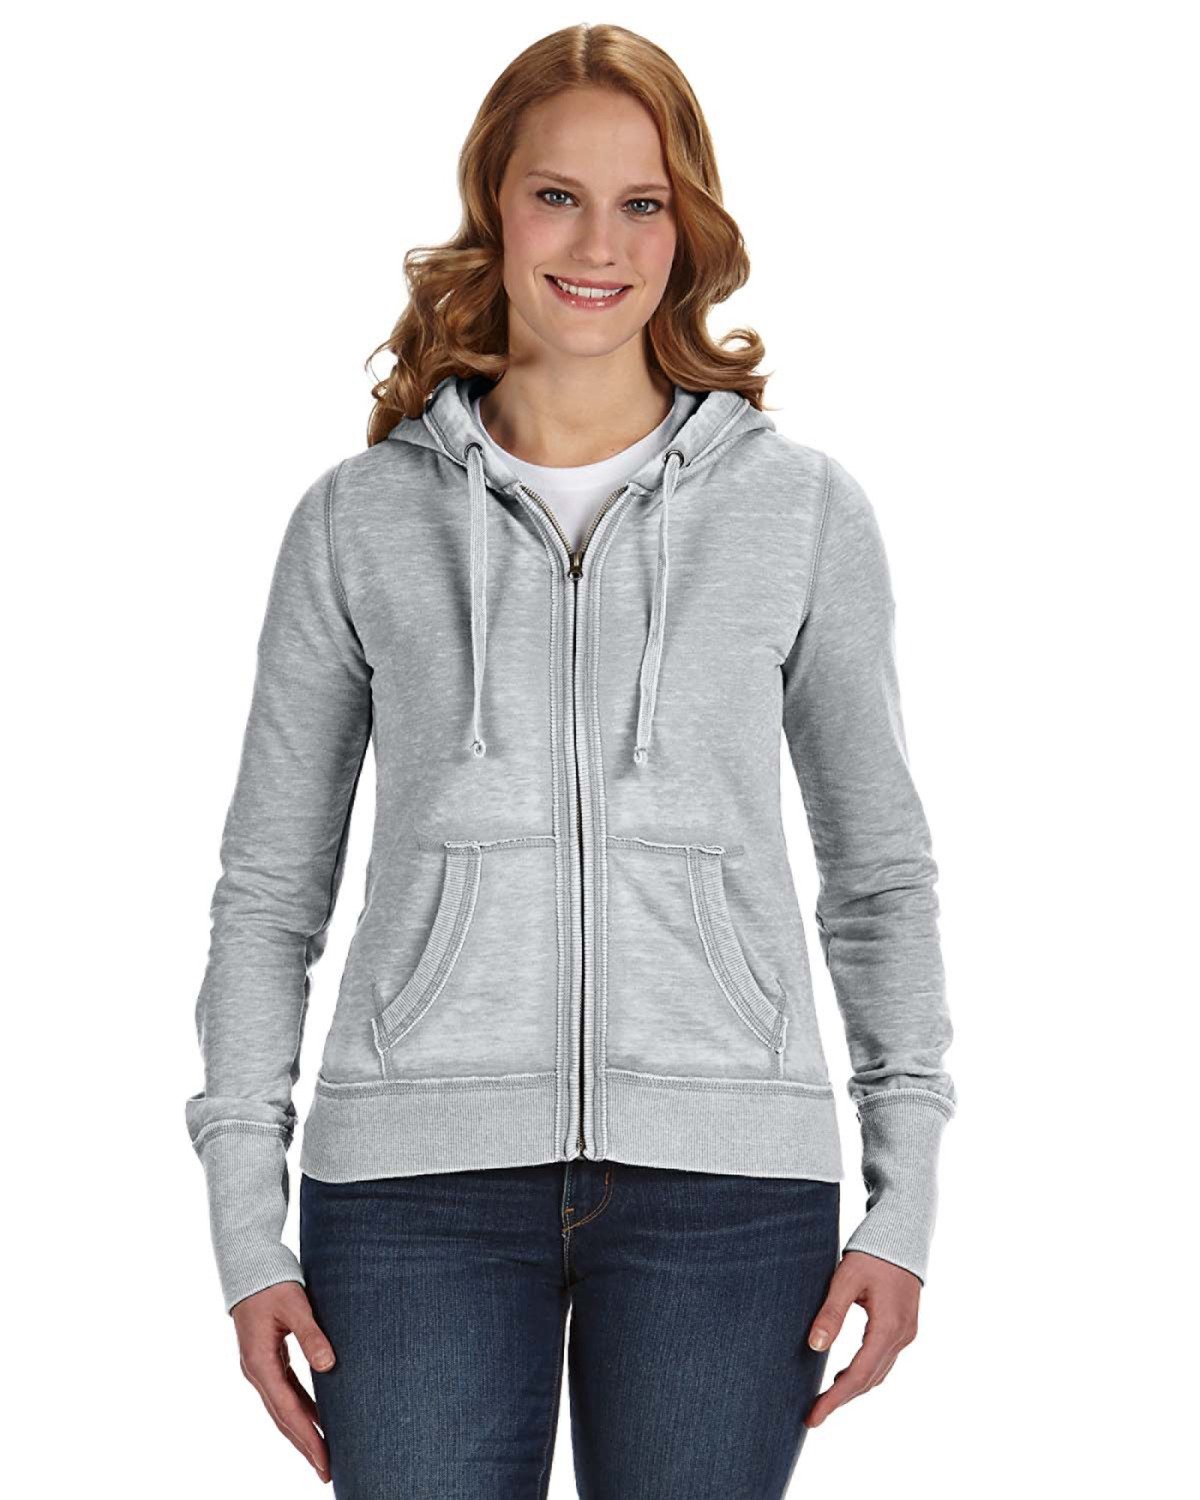 Reflex Women's Premium Fleece Cotton Full Zip Hoodie Sweatshirt Casual  Solid